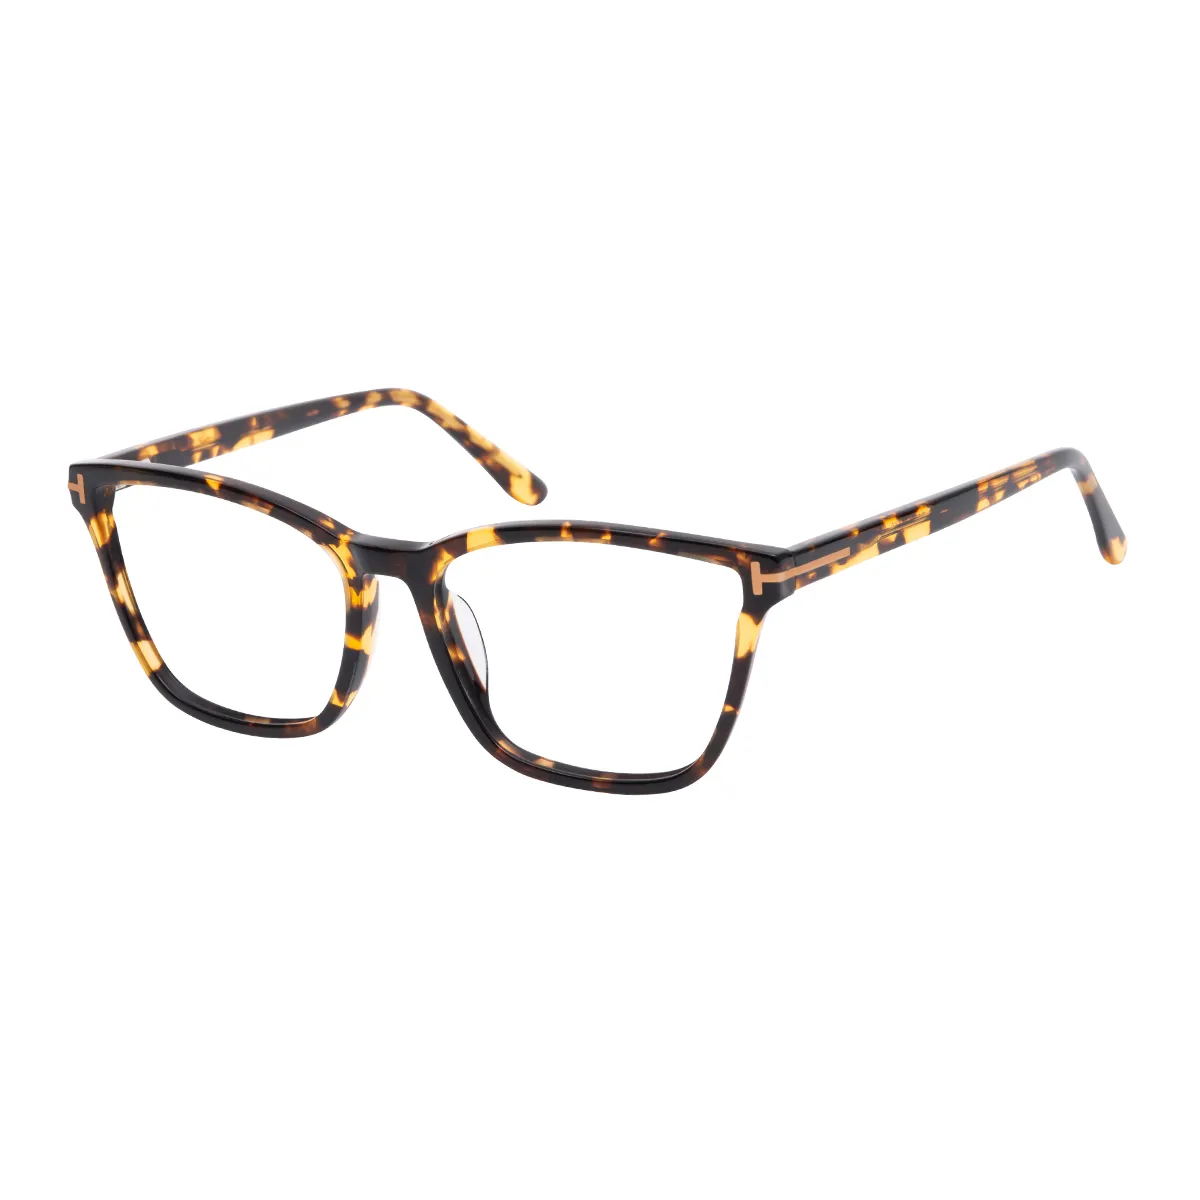 Darian - Square Tortoiseshell Glasses for Men & Women